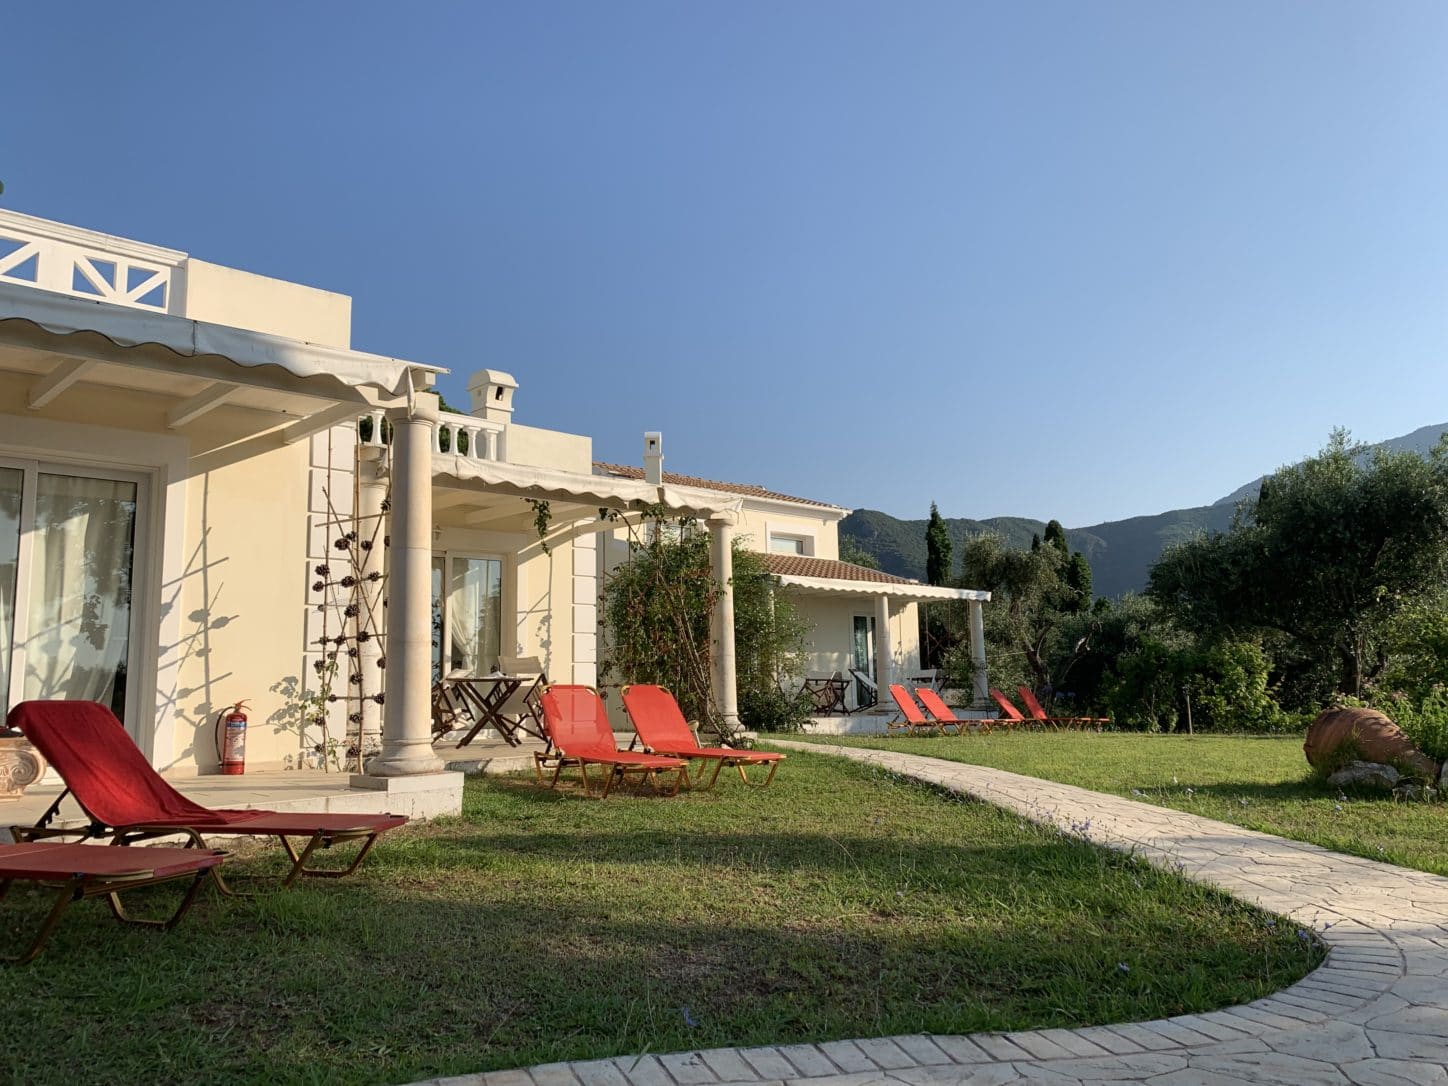 Three Days on Corfu. Villas at Castello di Vista, Corfu, Greece. Photo by ConsumerMojo.com